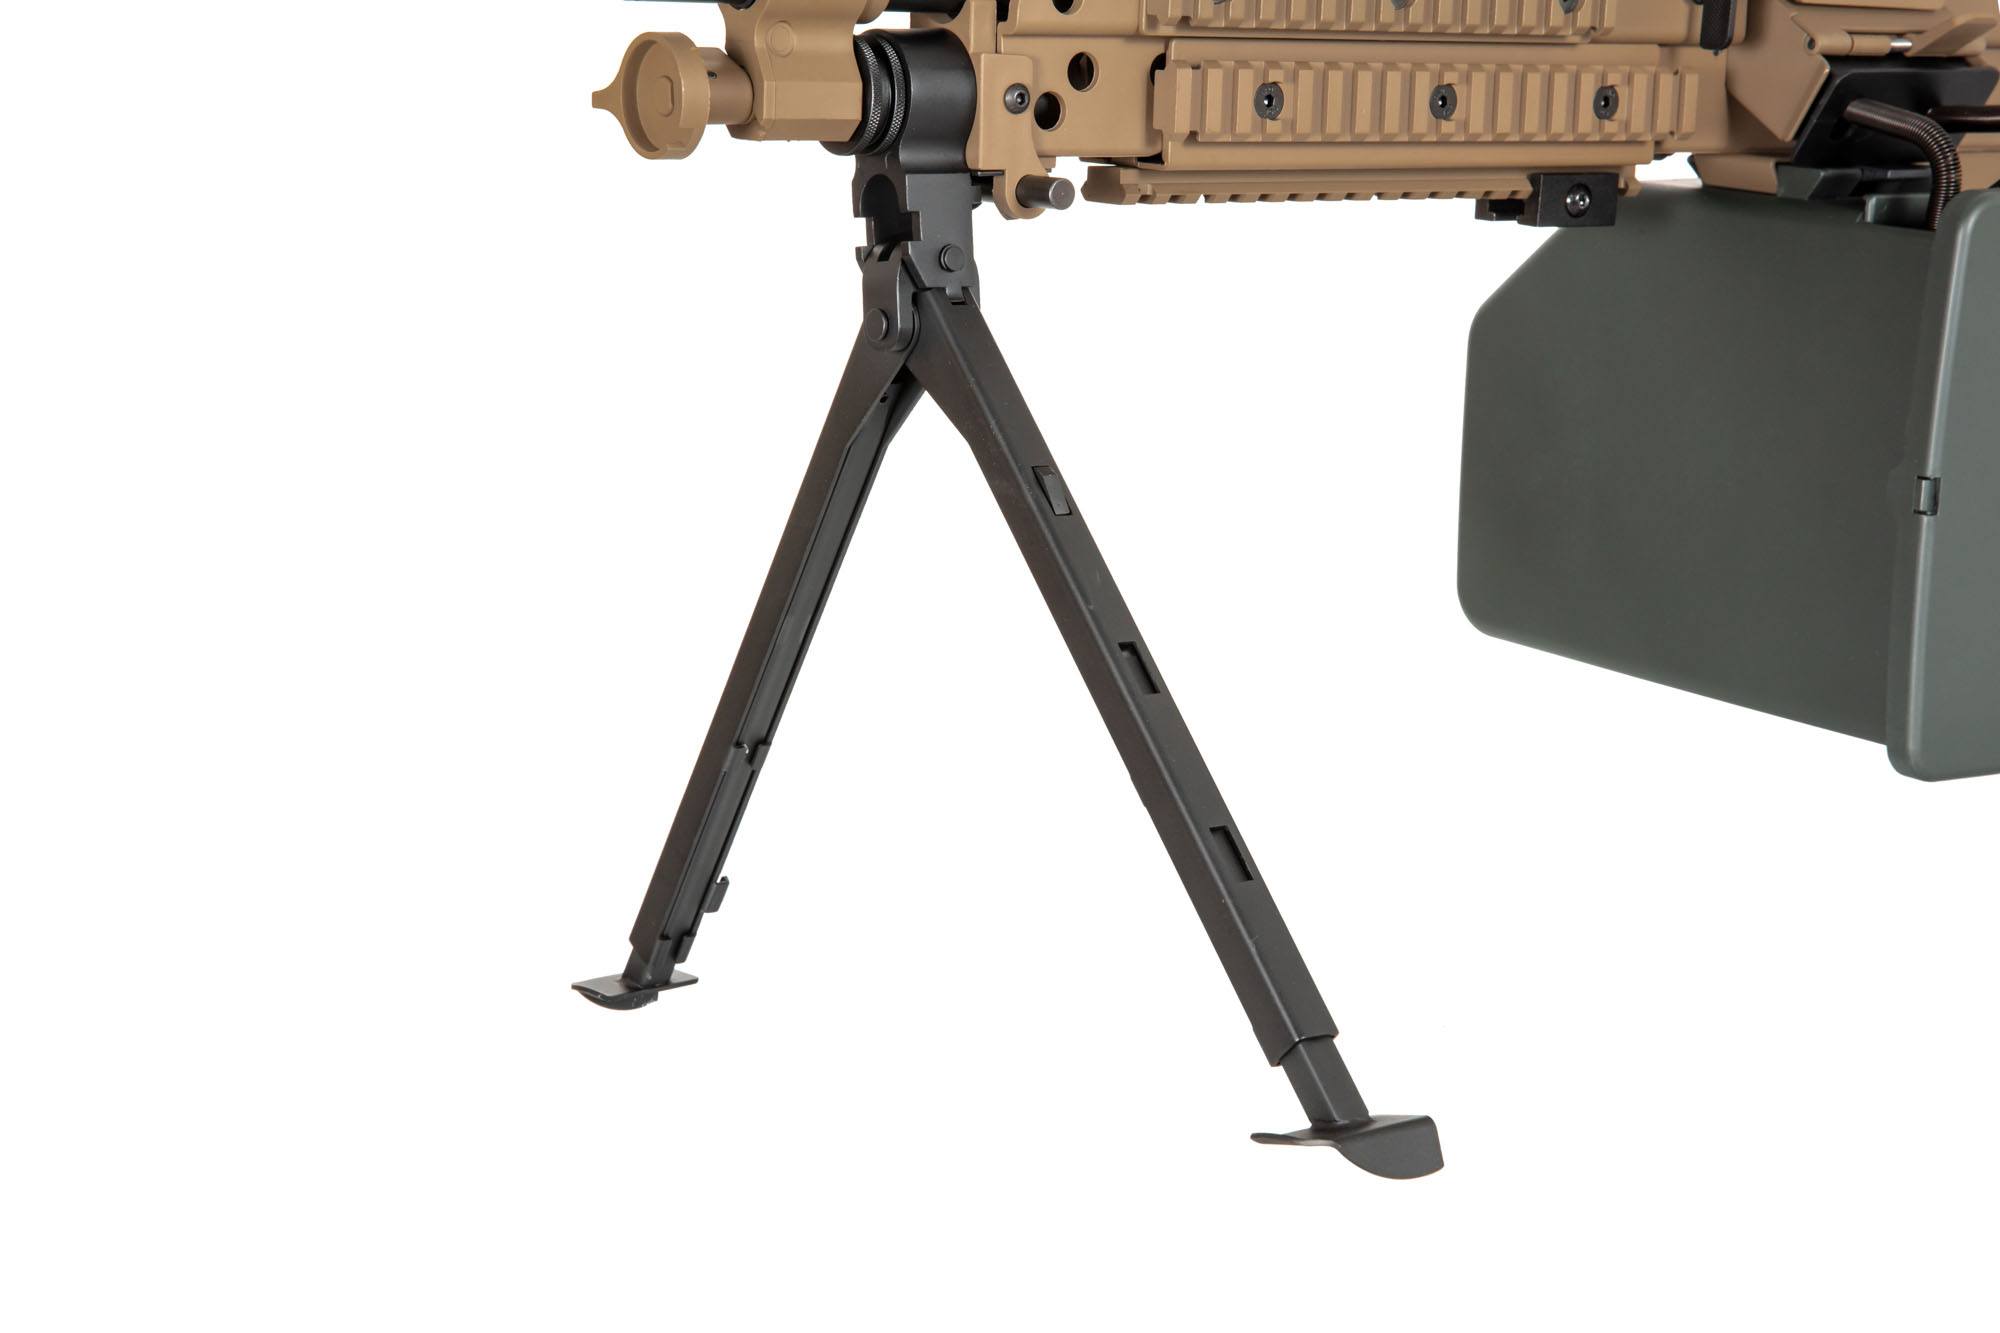 SA-46 CORE™ Machine Gun - Tan